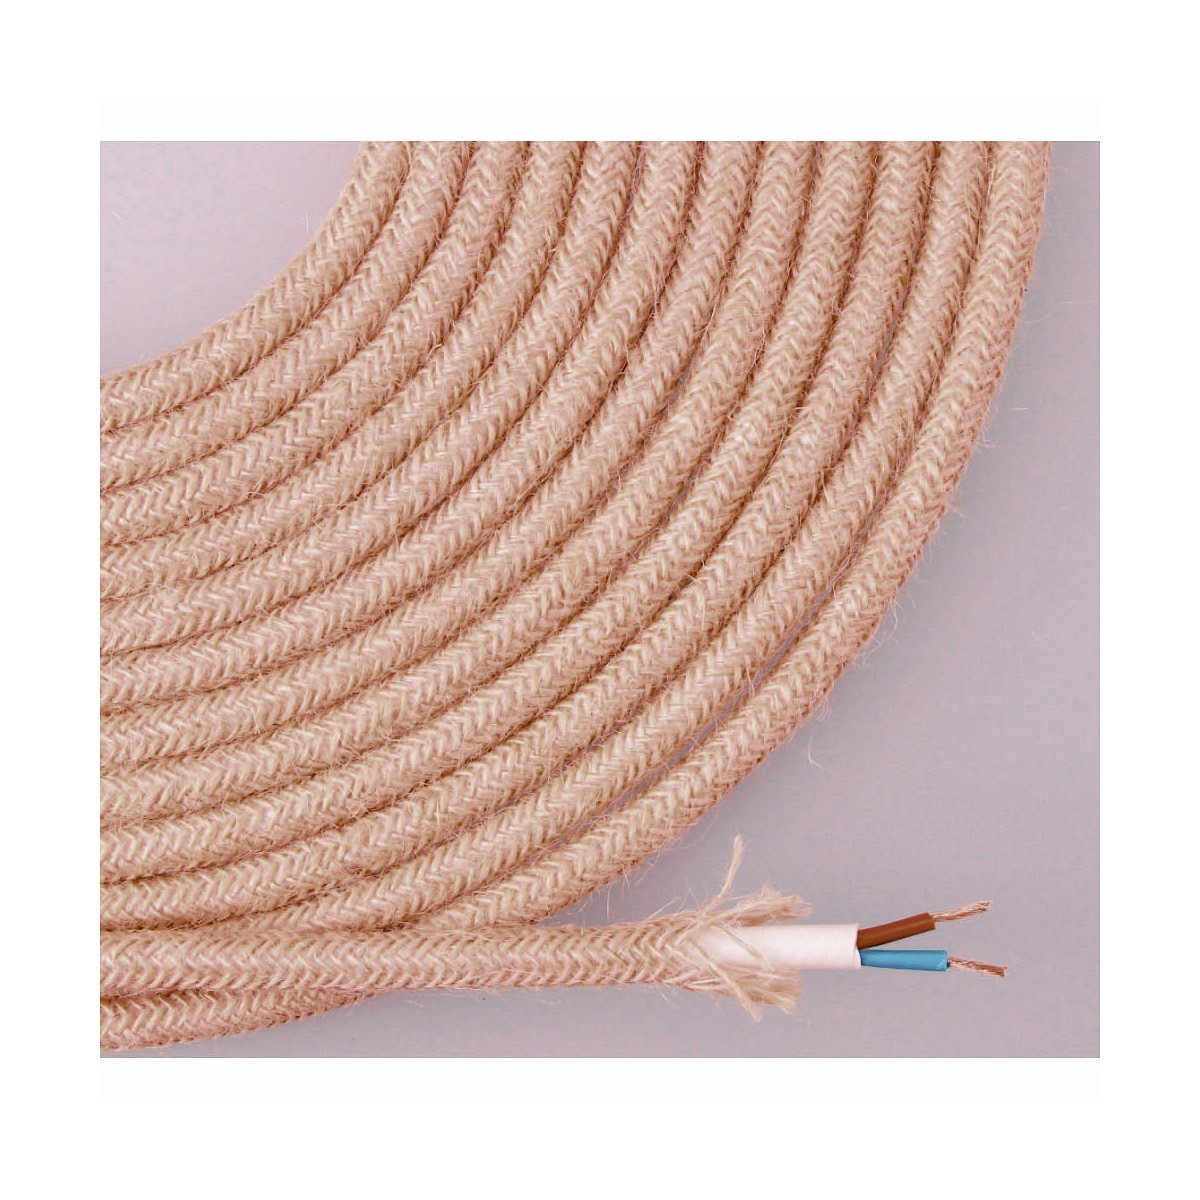 Cable de cuerda de yute tejida y enfundada 2x0,75mm 25m euro/m